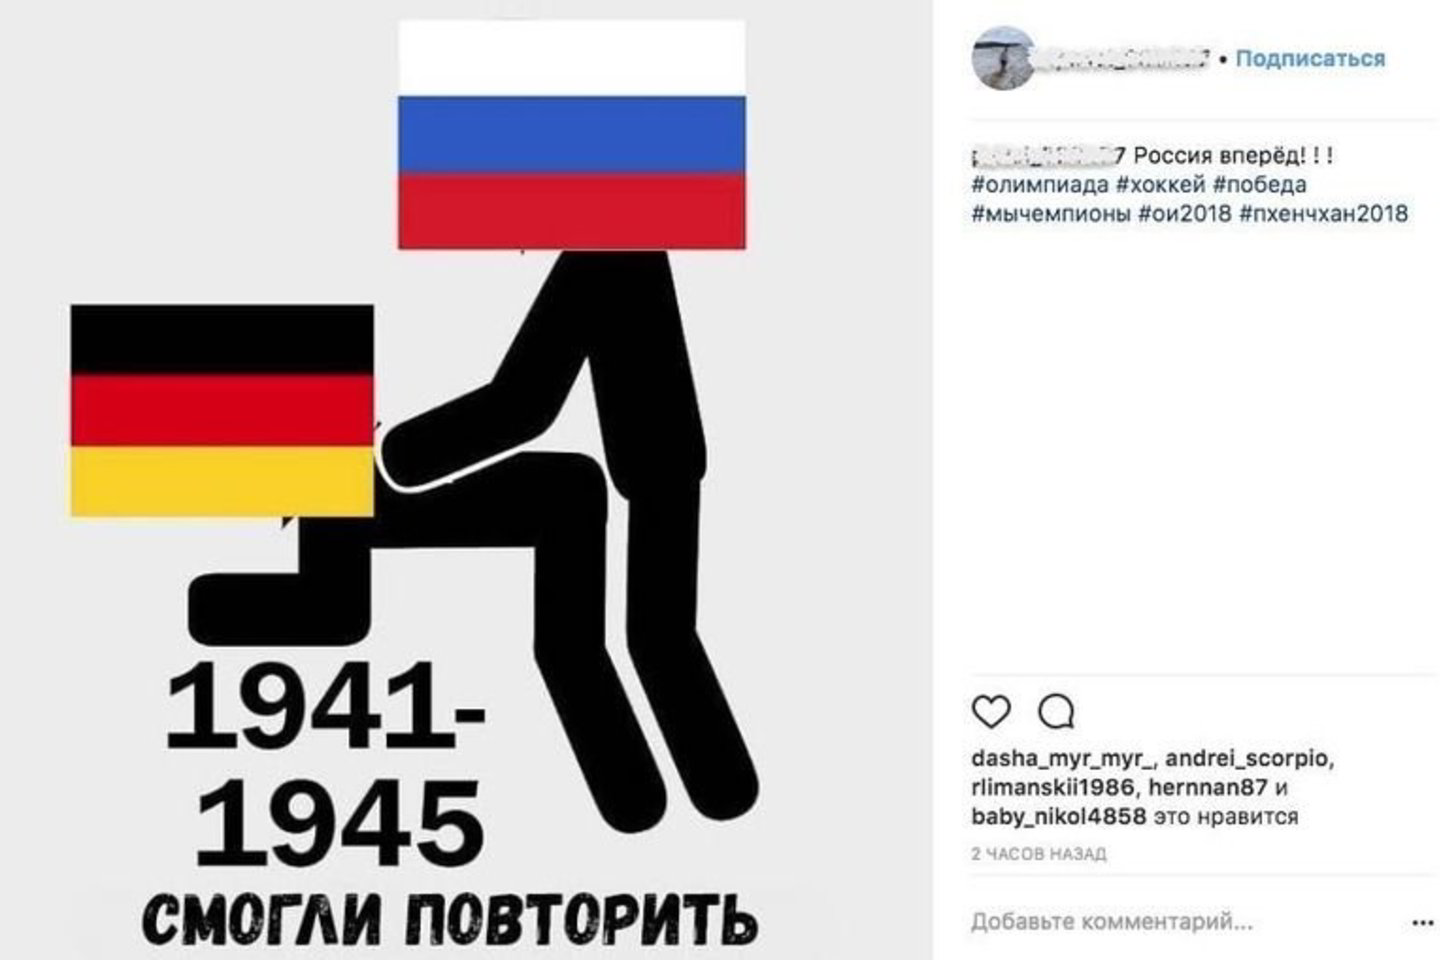  Rusų memai socialiniuose tinkluose